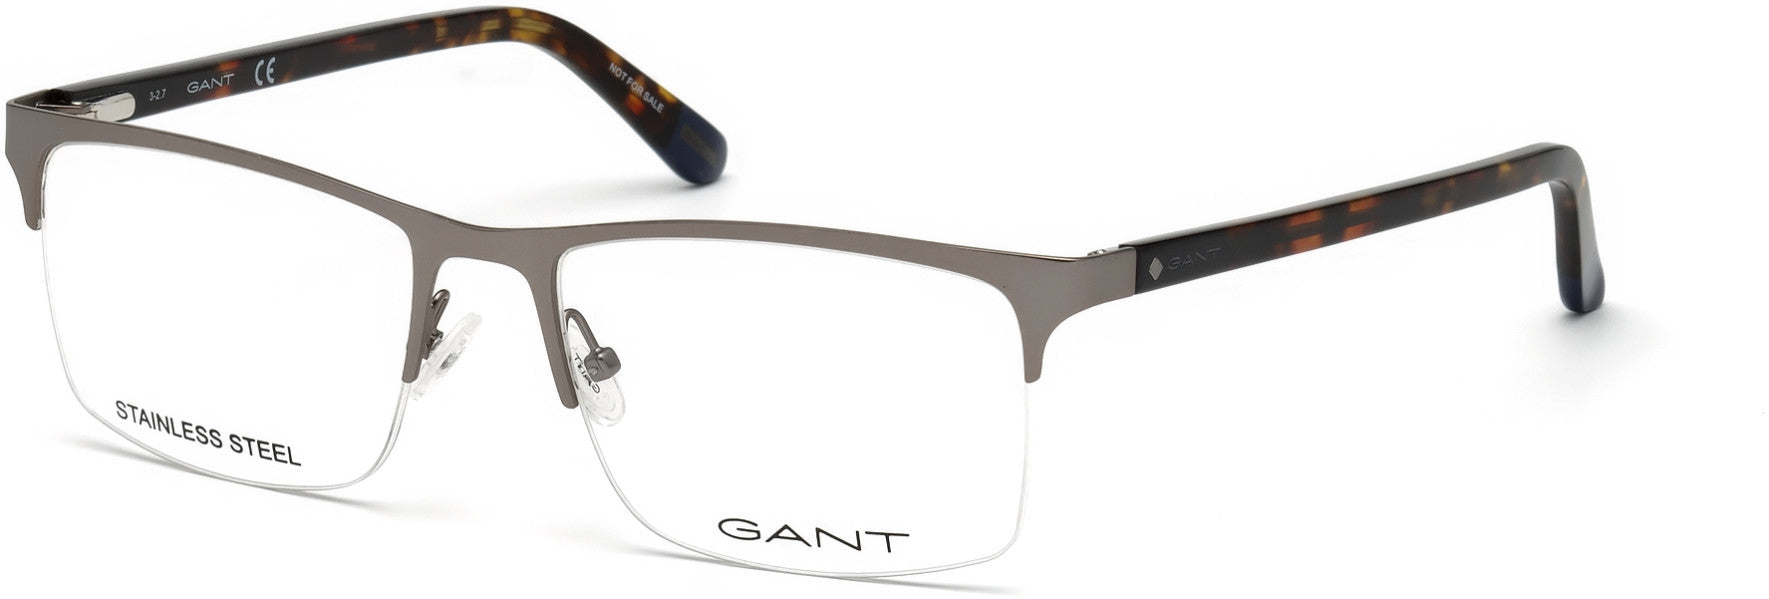 Gant GA3169 Rectangular Eyeglasses 009-009 - Matte Gunmetal